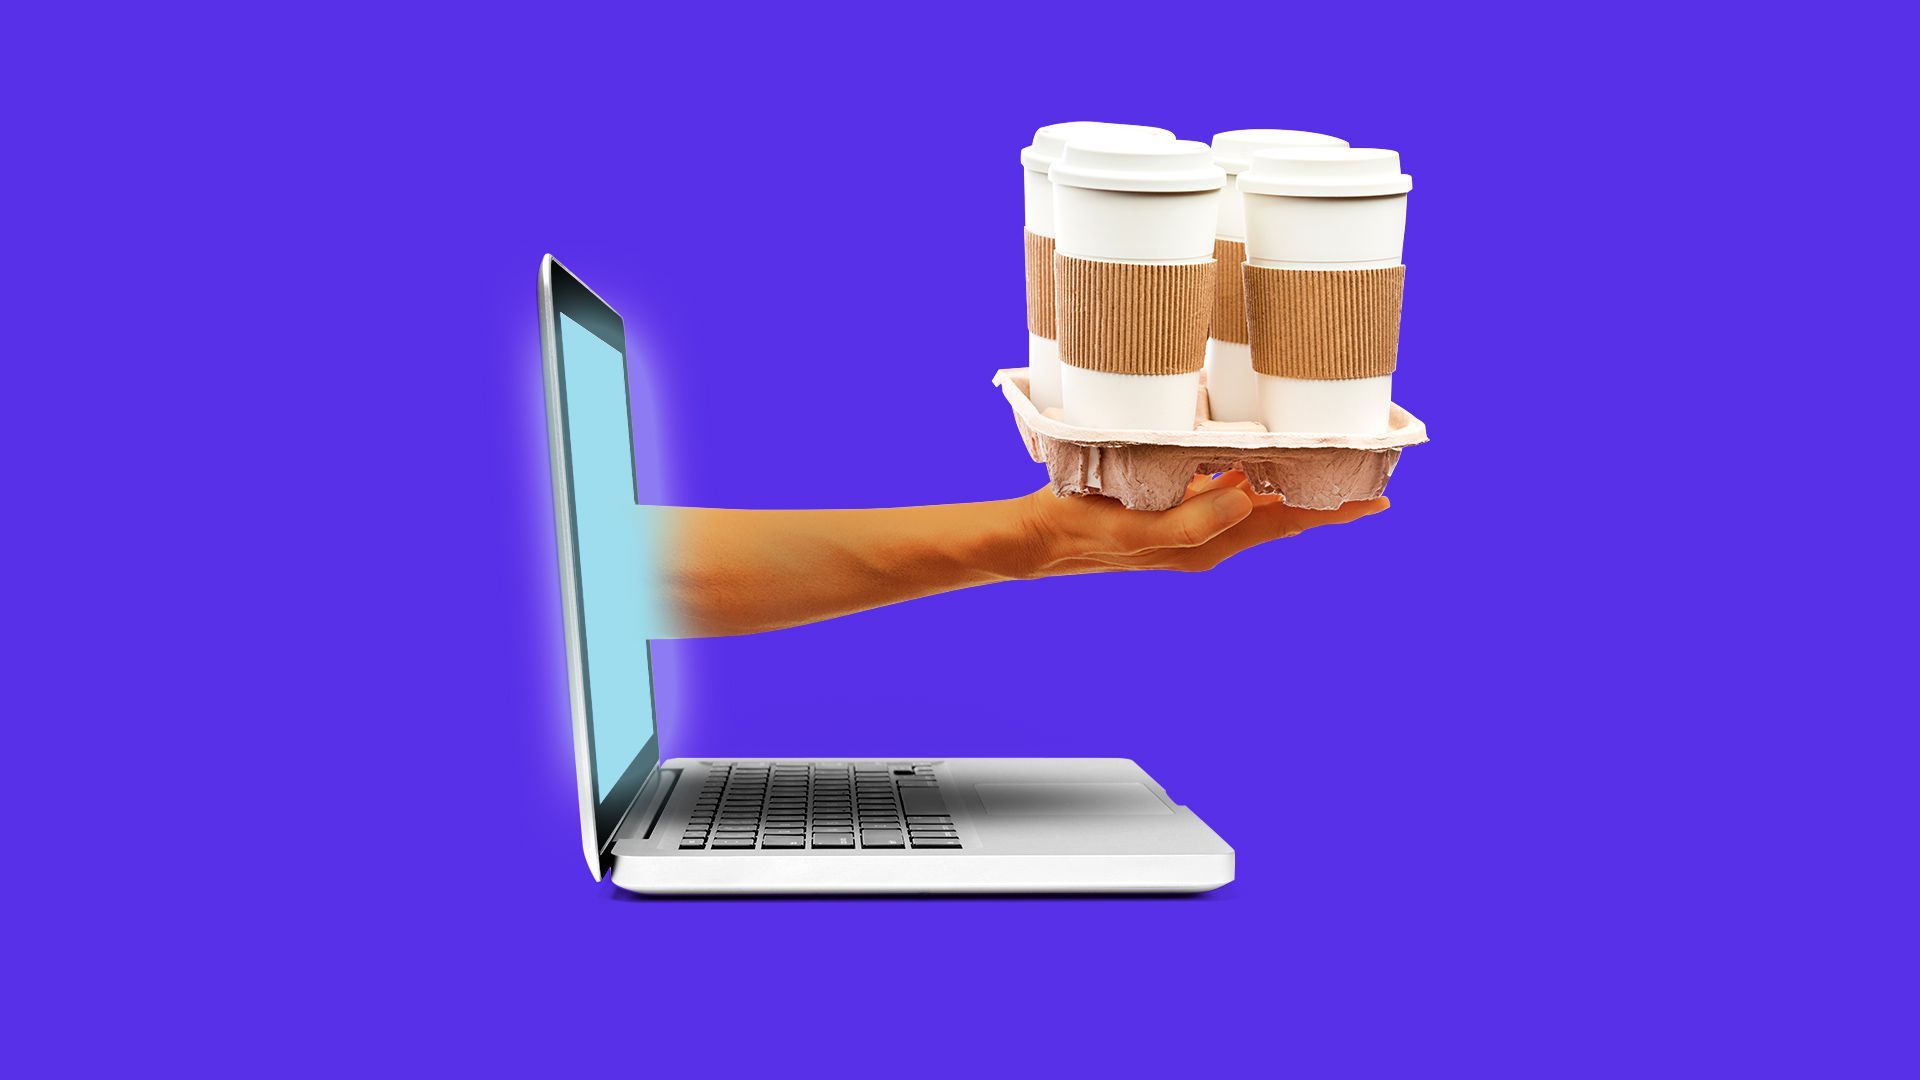 Illustration of a digital coffee run